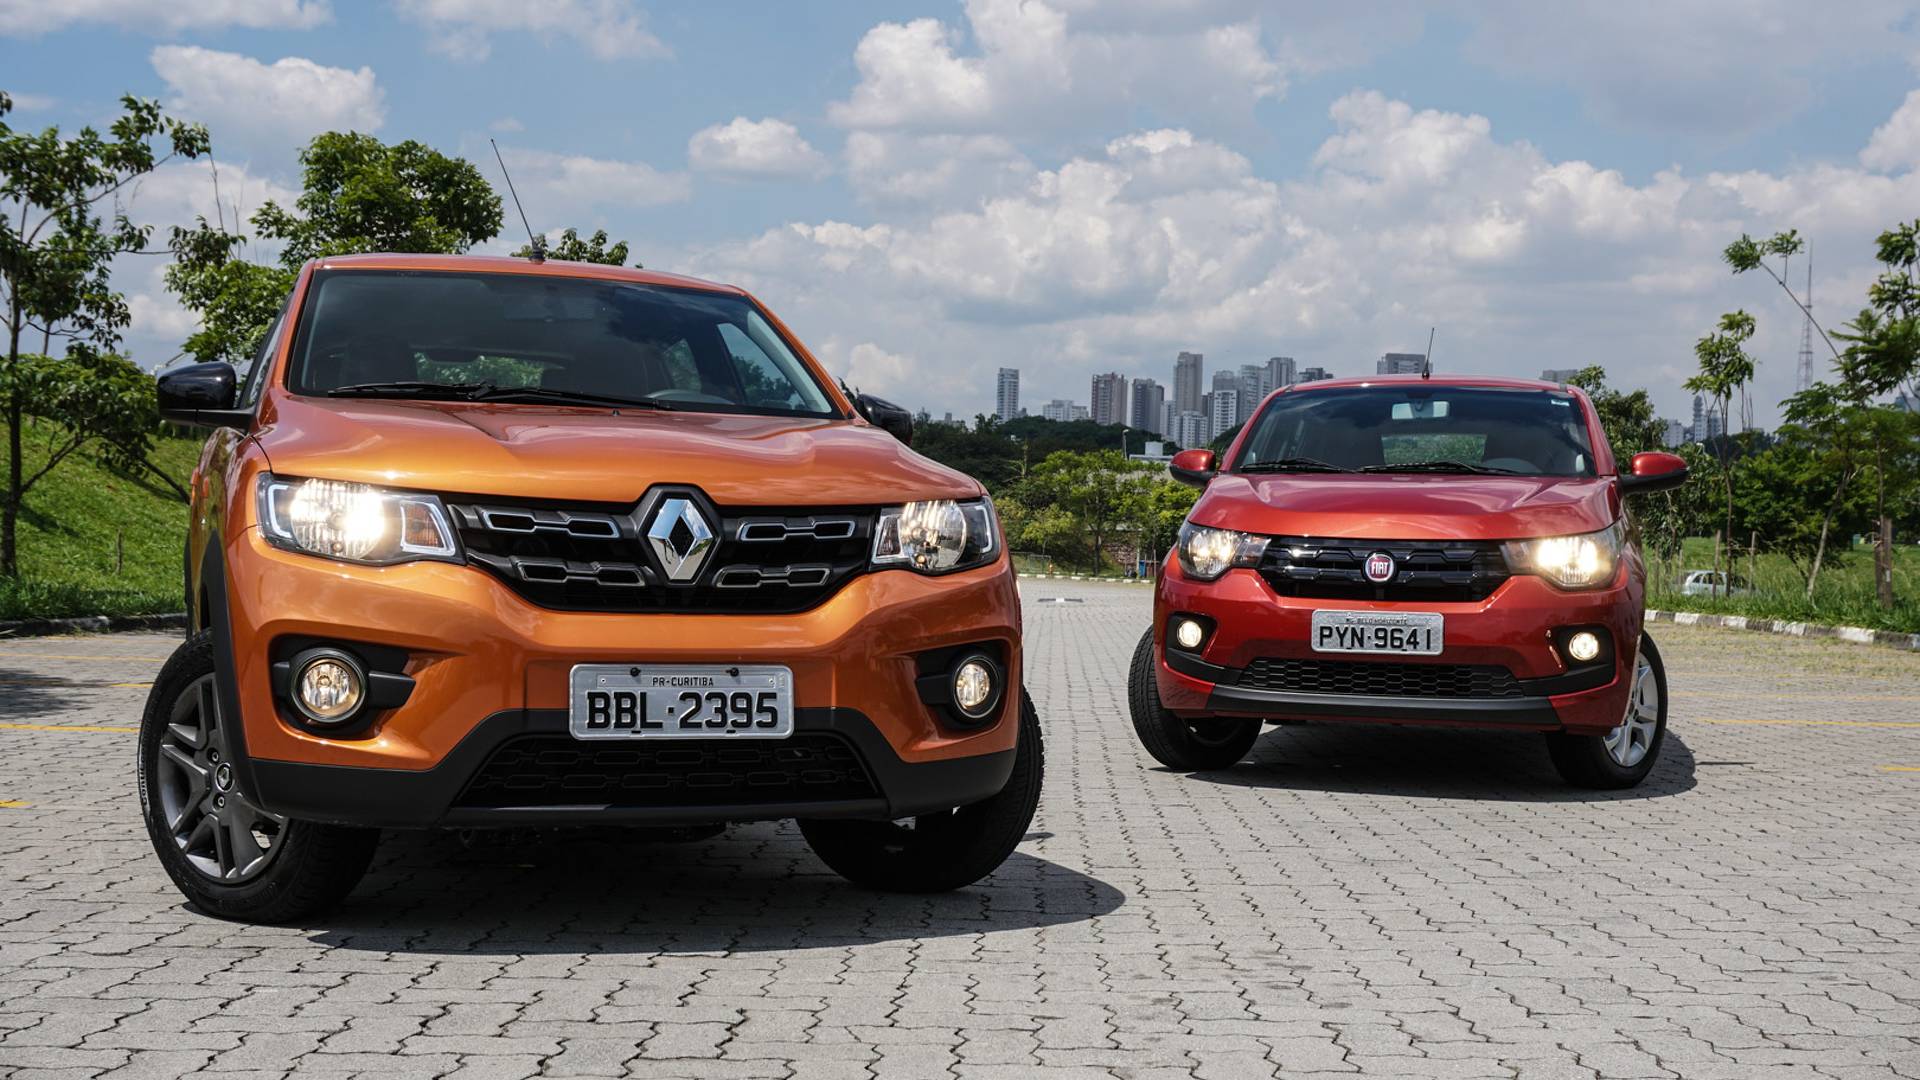 Renault Kwid sobe de preço e perde posto de carro mais barato do Brasil; veja para qual